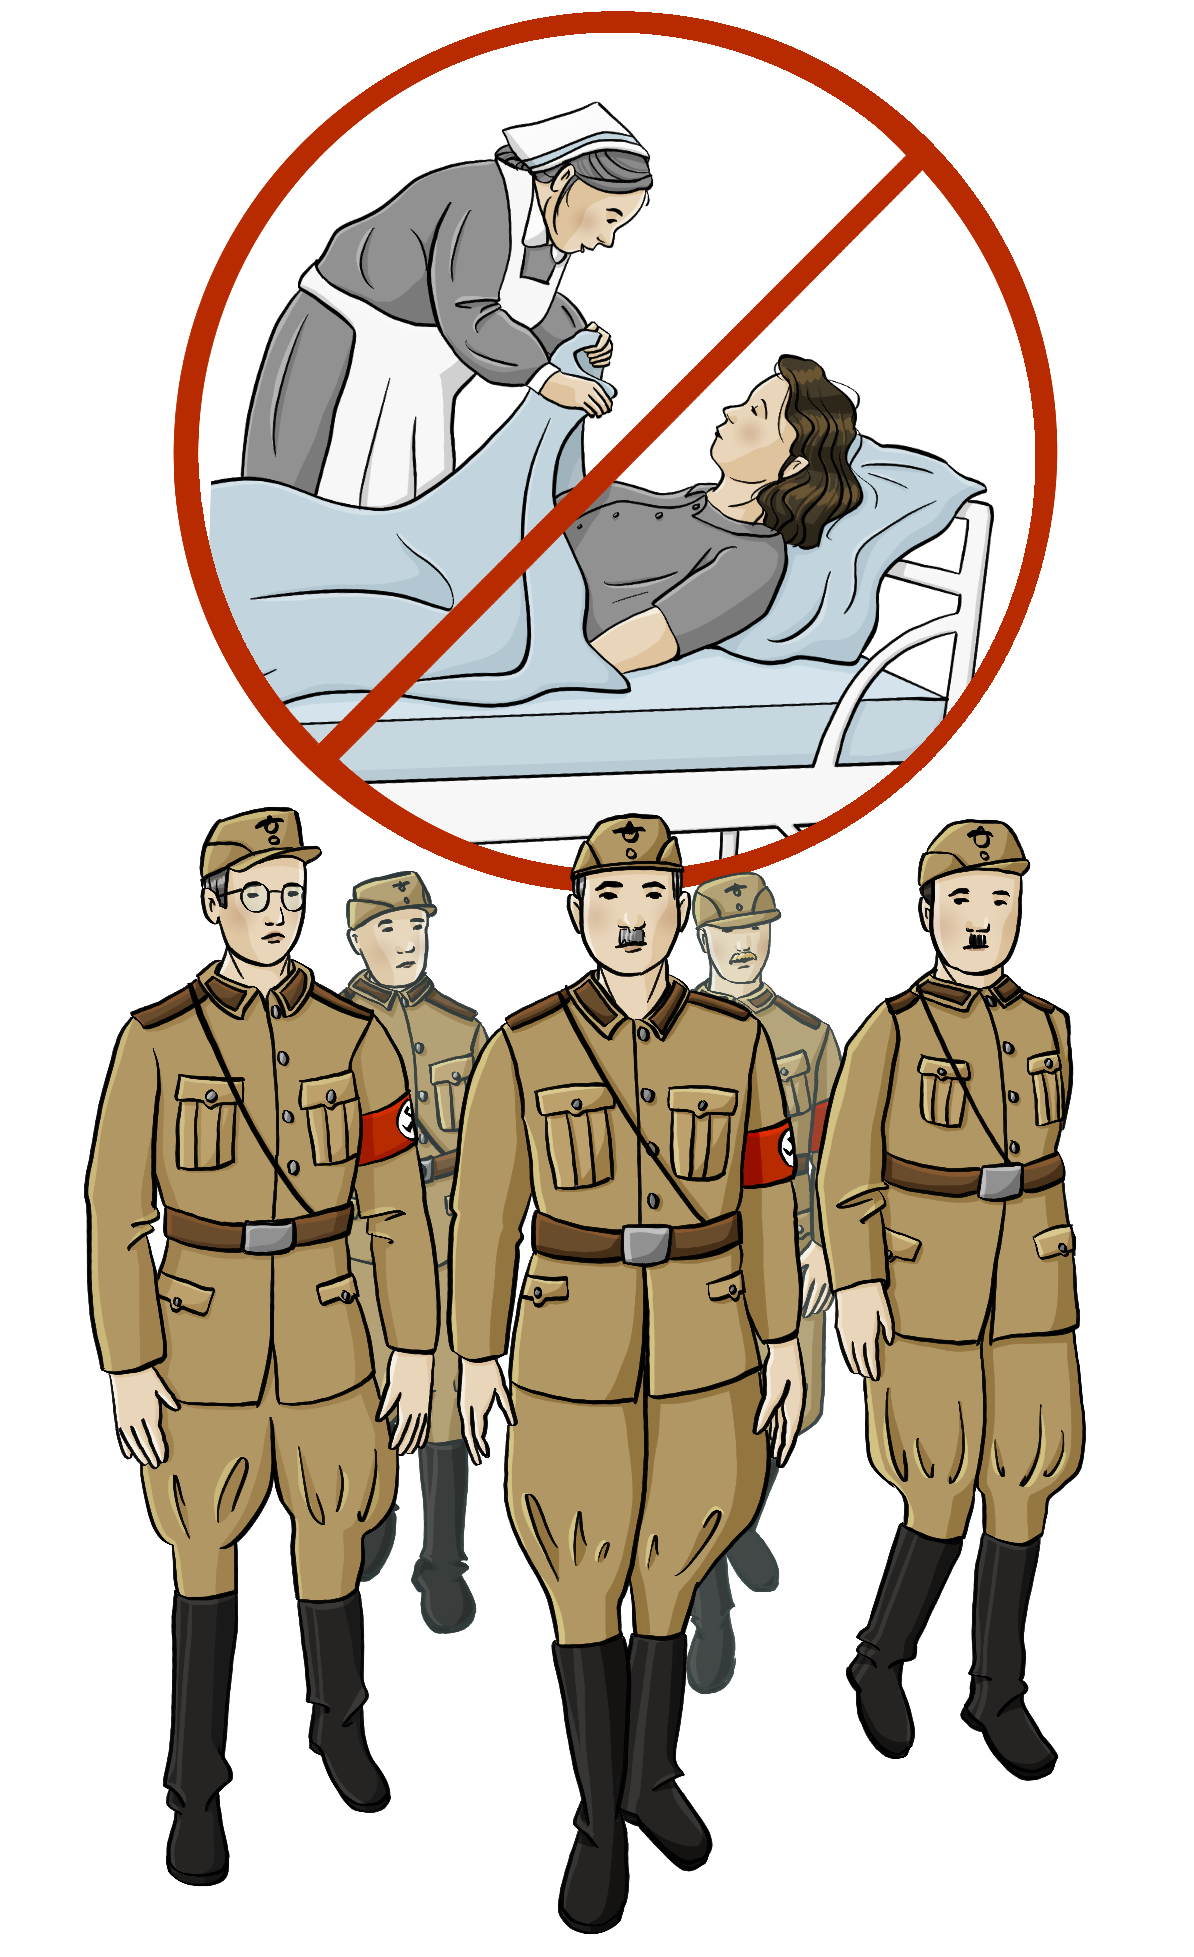 Eine Gruppe Männer in der Uniform der Nationalsozialisten. Darüber ist ein Bild von einer Frau in einem Pflegebett. Das Bild ist durchgestrichen. 